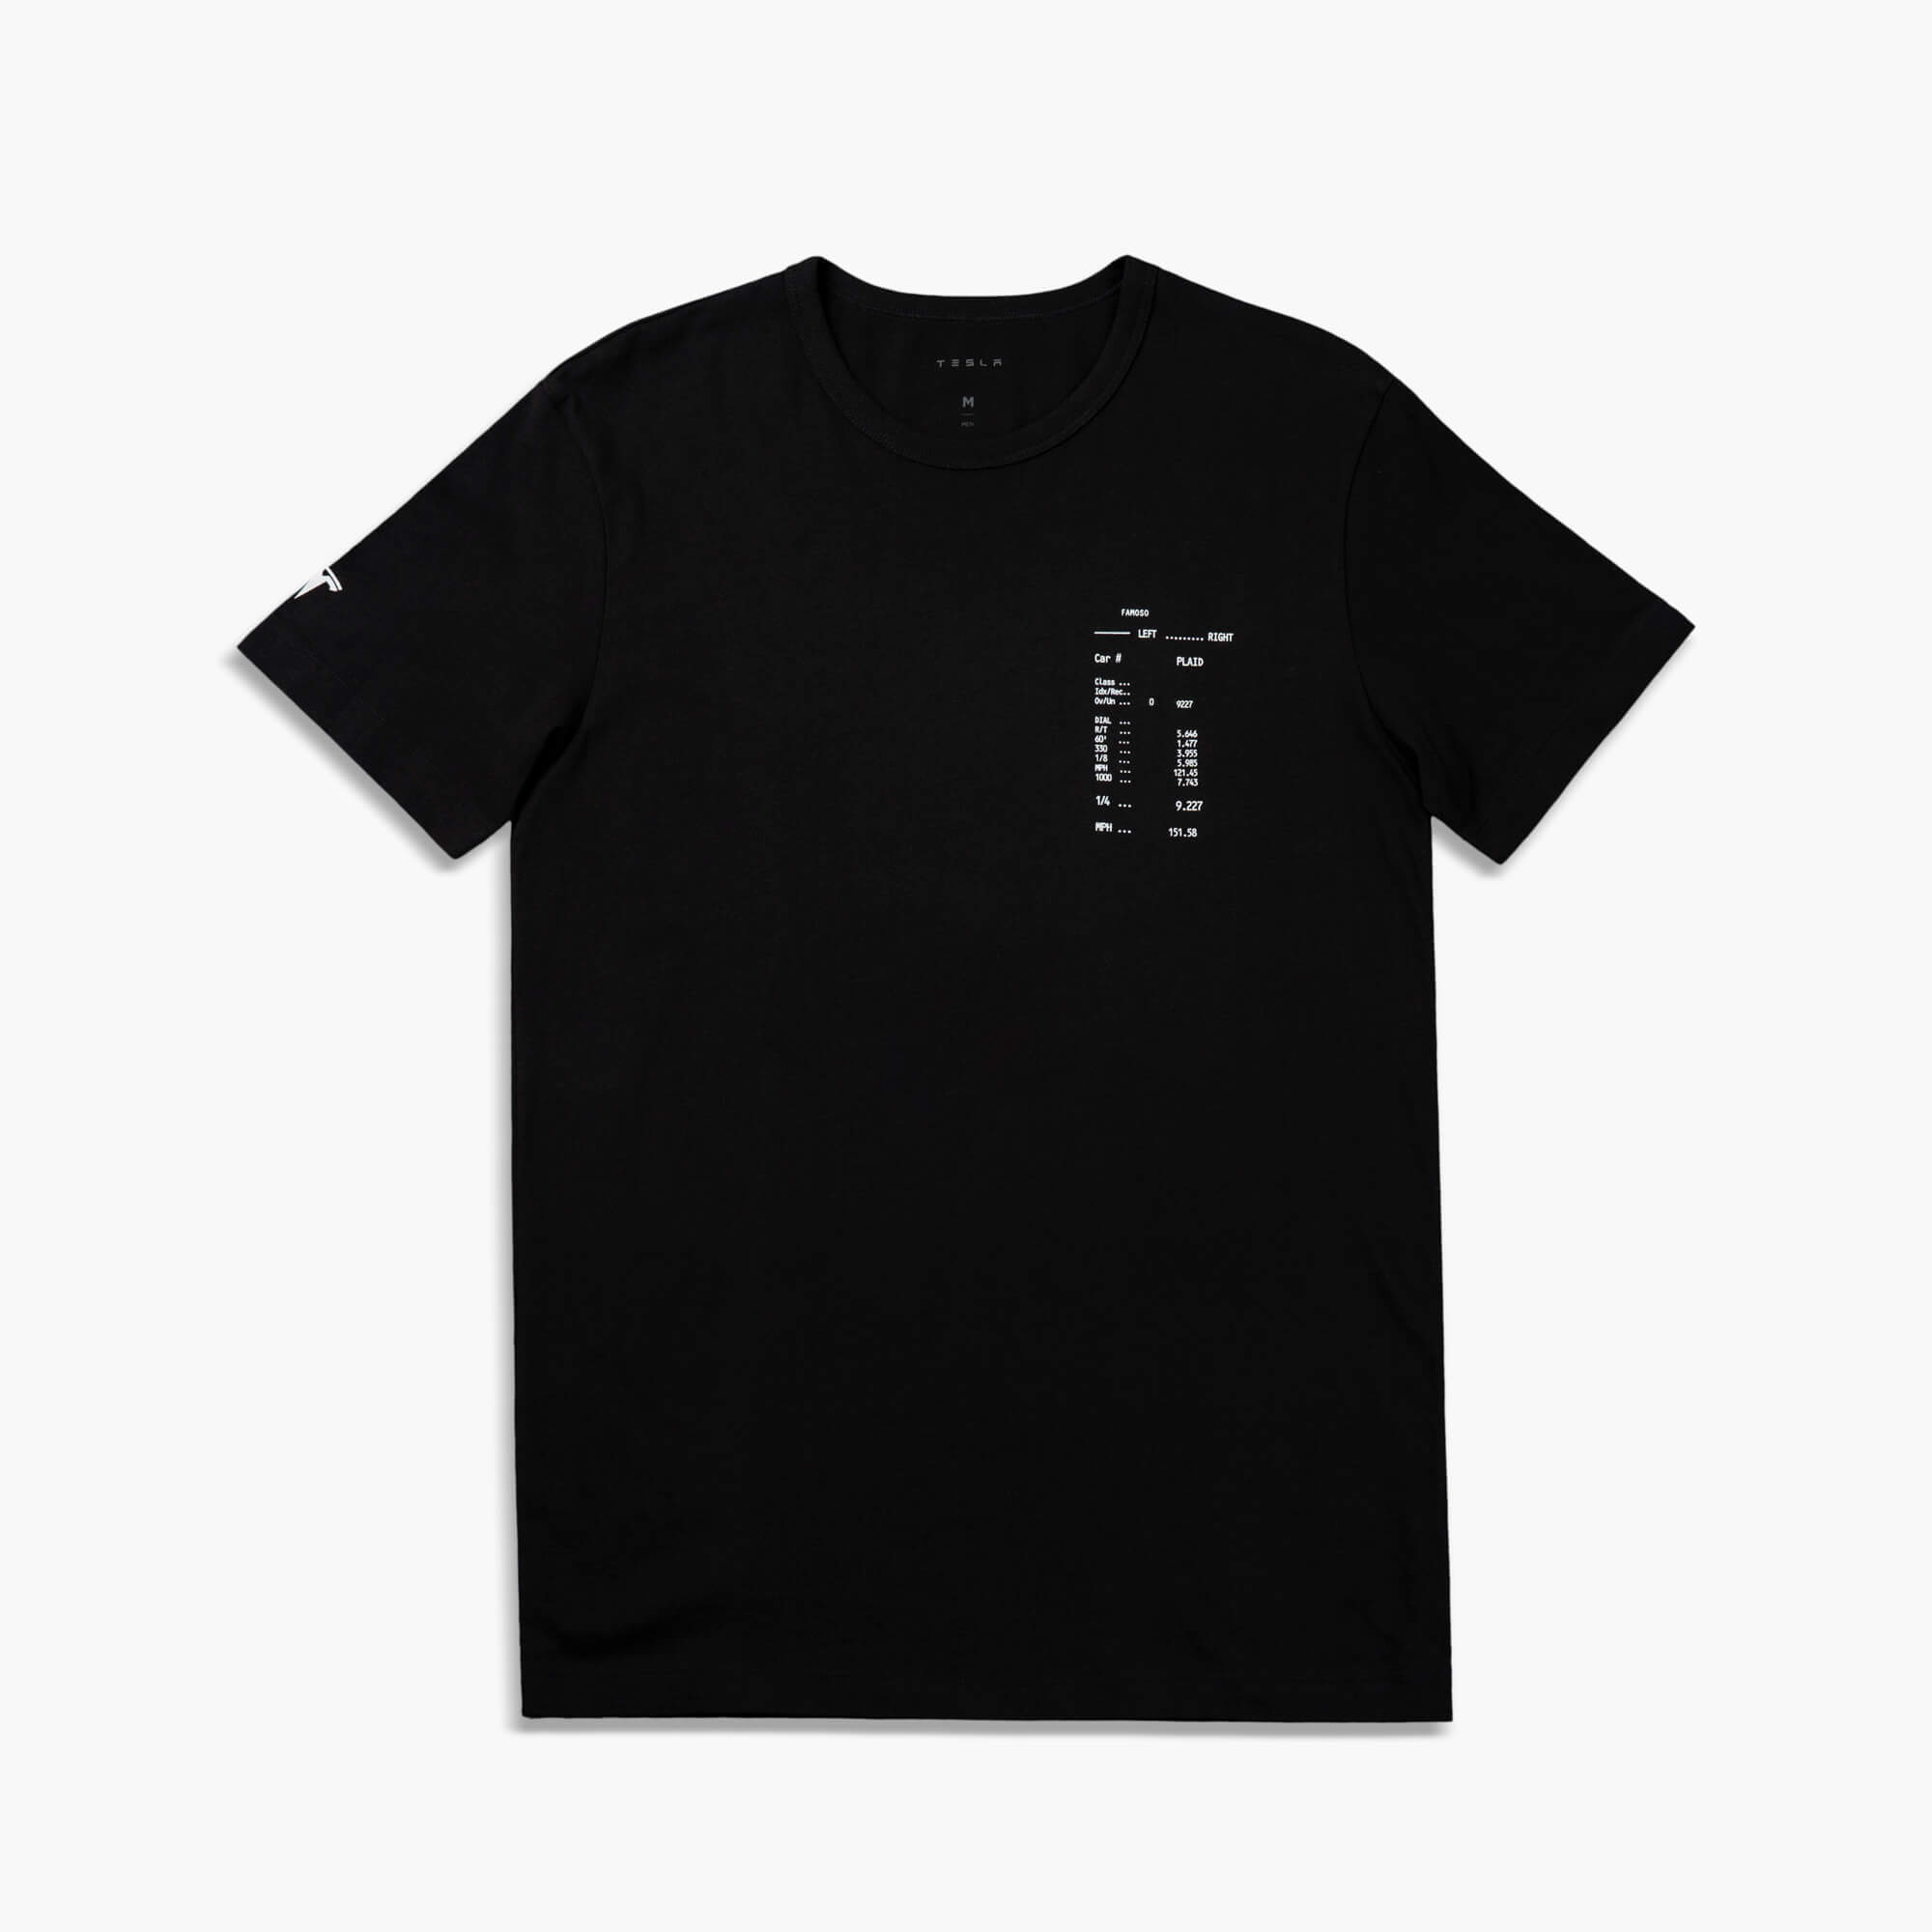 Plaid Viertelmeilen-T-Shirt für Herren